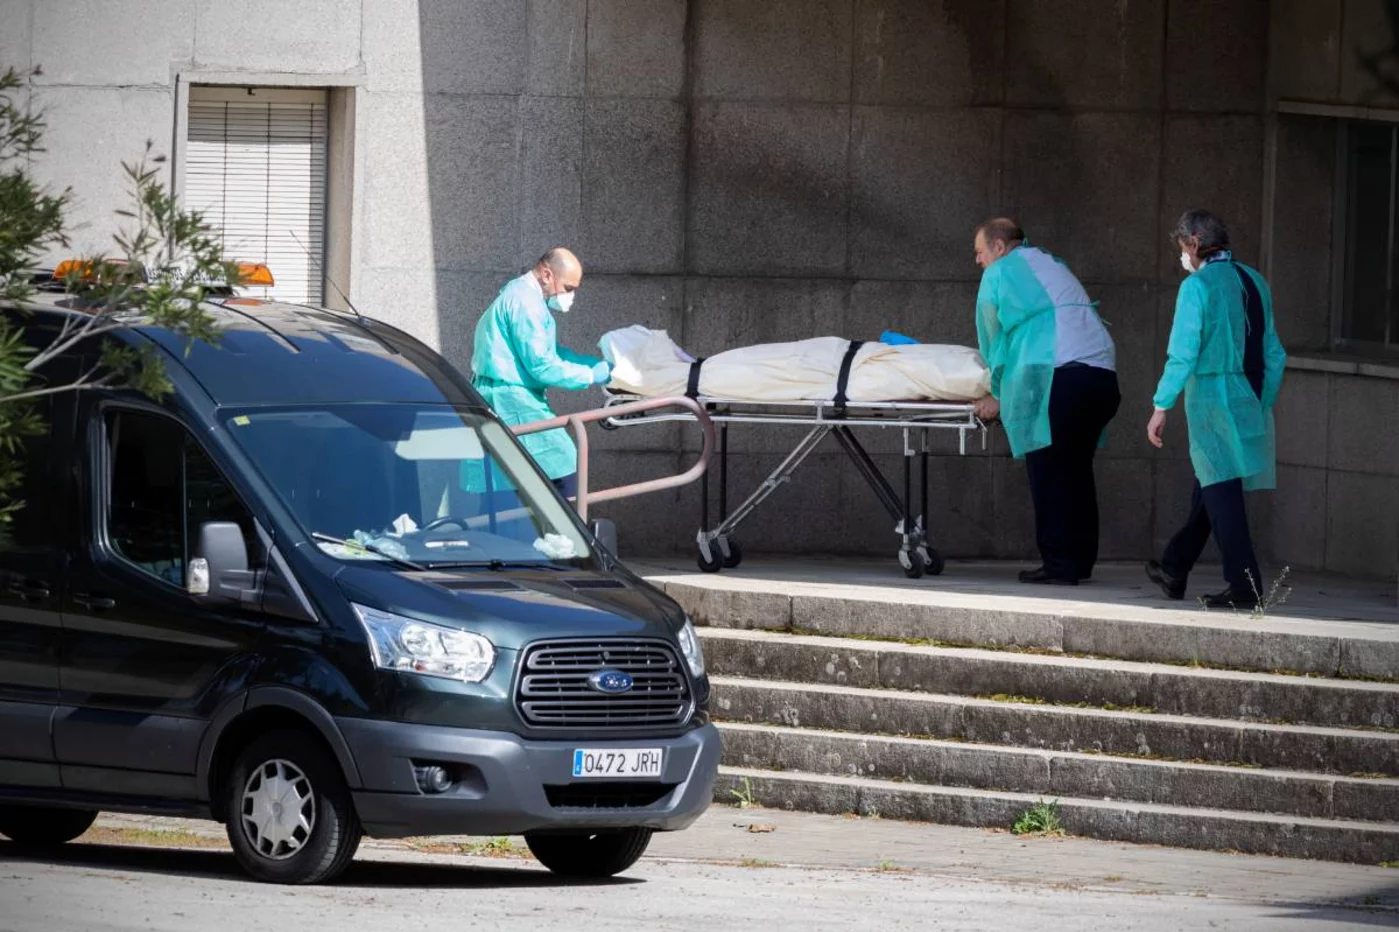 Operarios de una funeraria trasladan un cadáver en una residencia durante la primera ola de covid de 2020. Foto: ALBERTO DI LOLLI